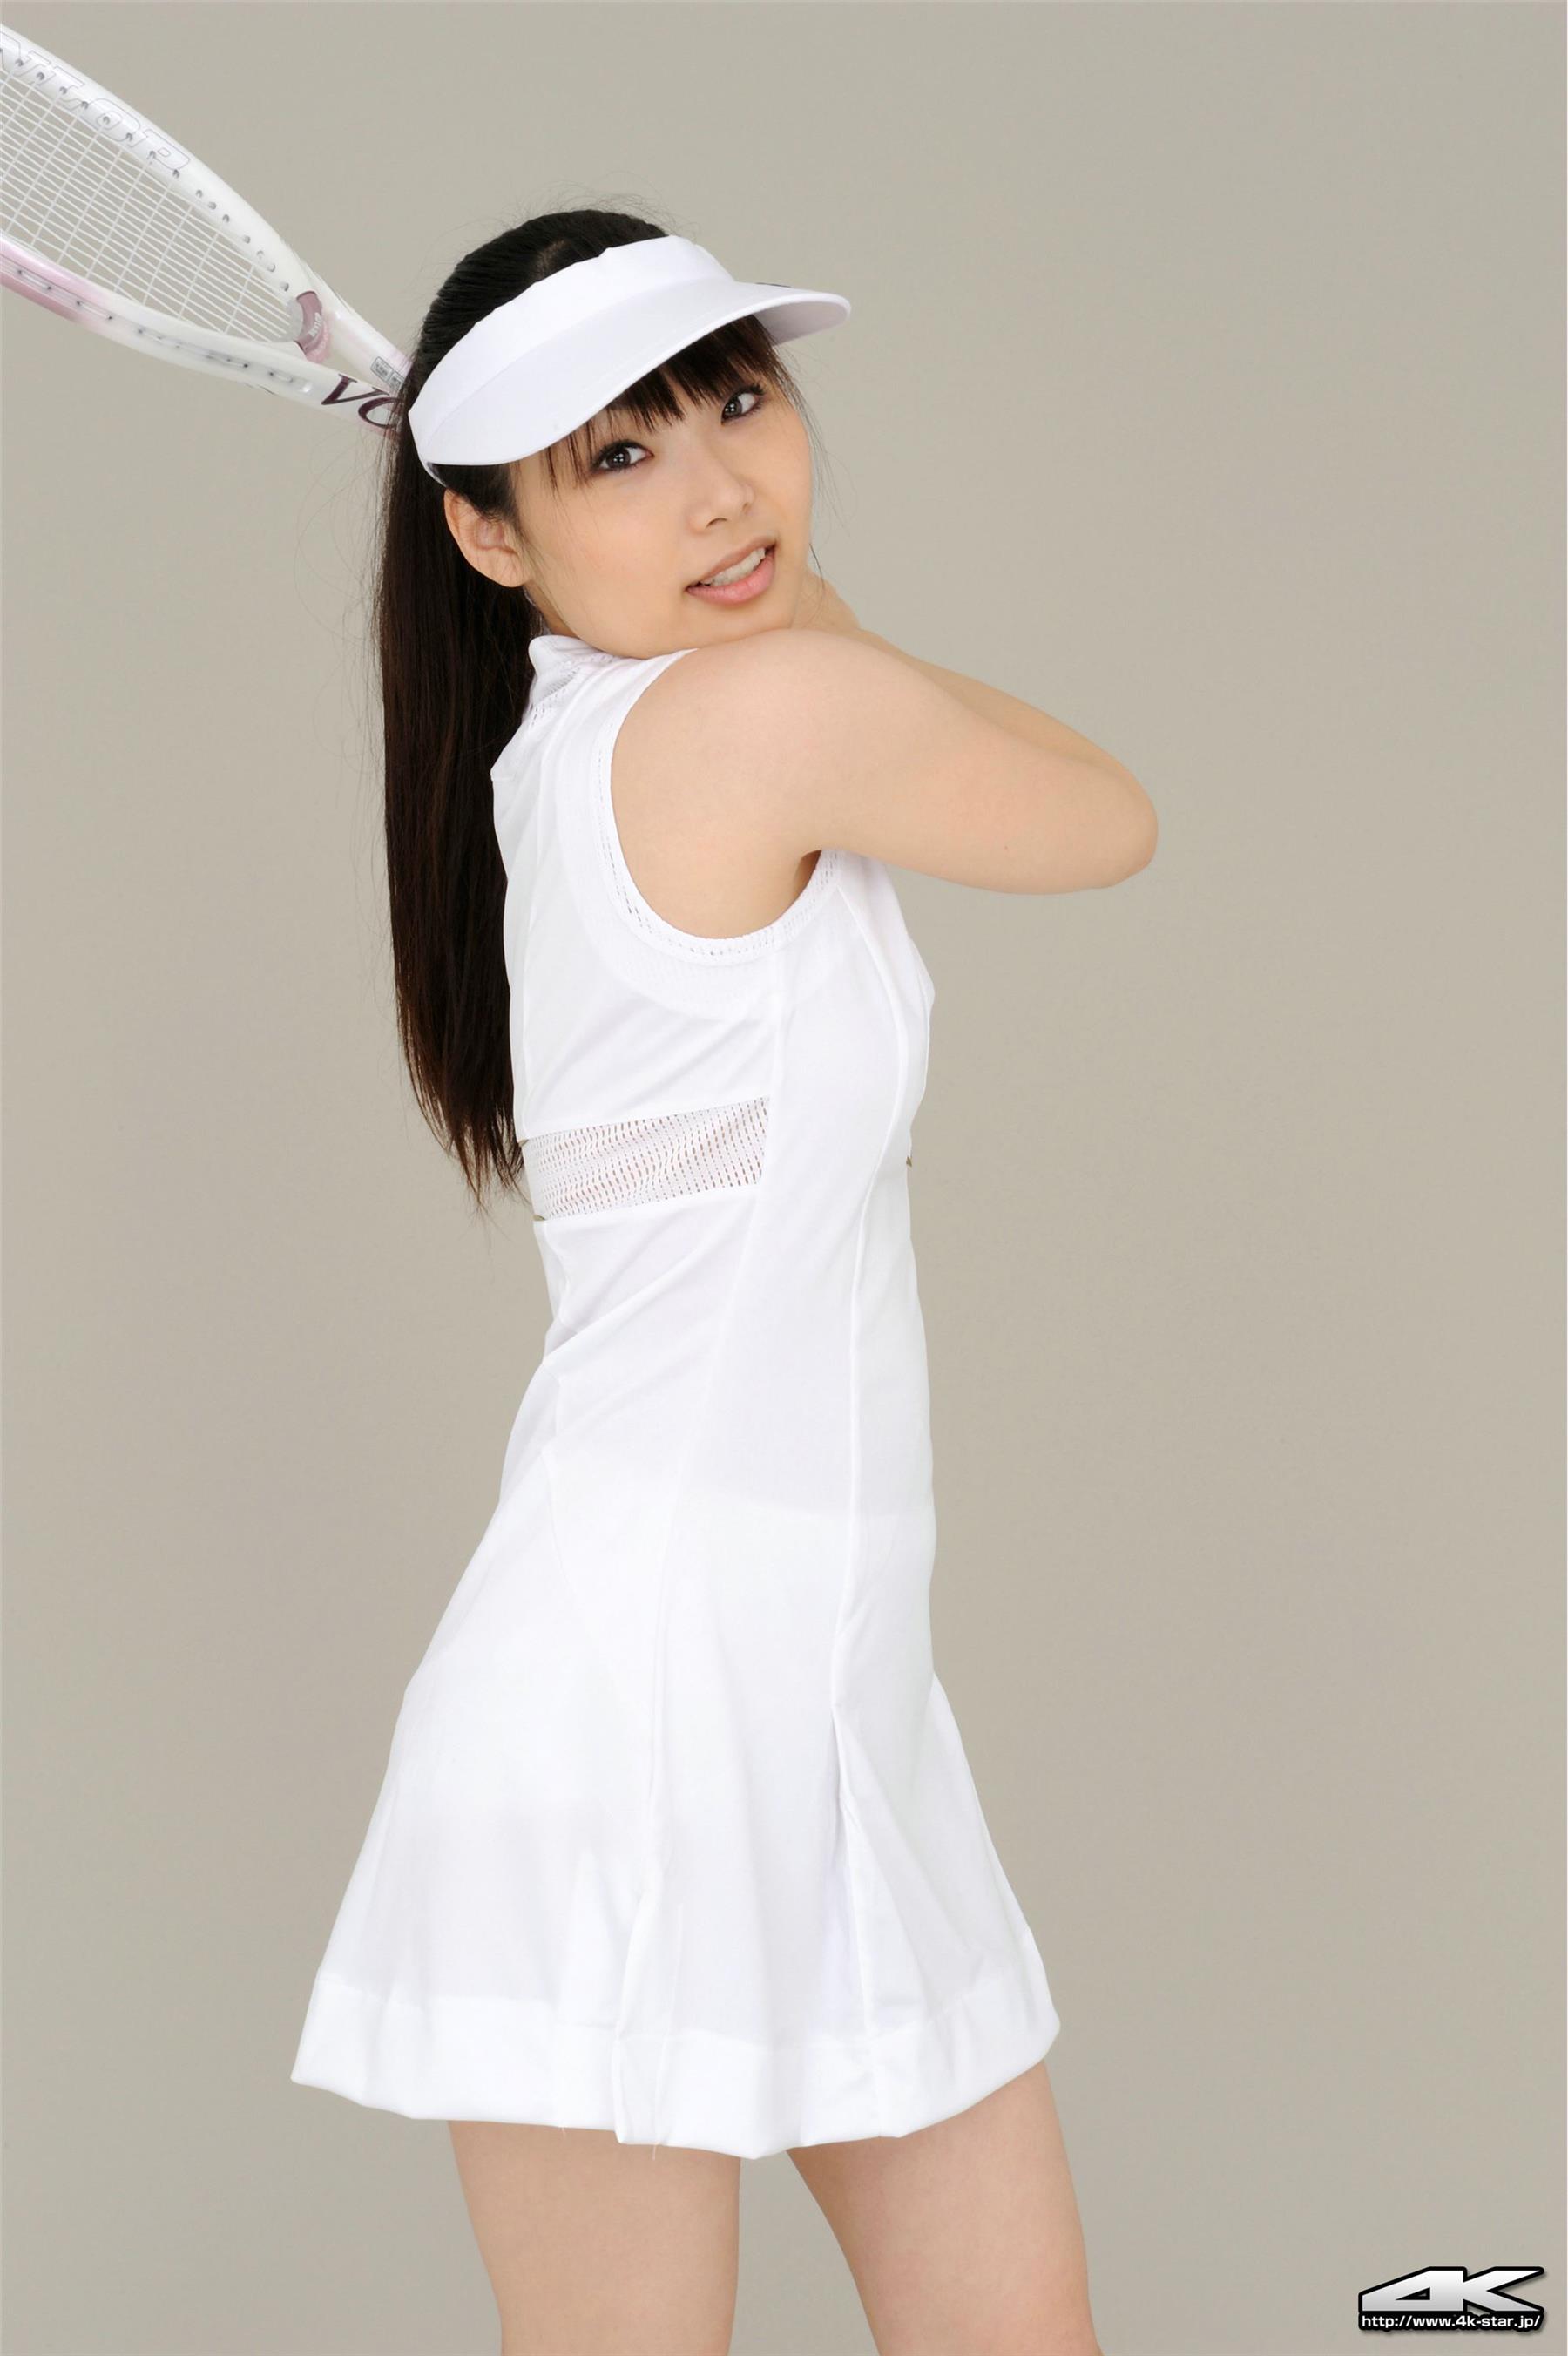 4K-STAR NO.886 Asuka Karuizawa tennis club 2  - 105.jpg